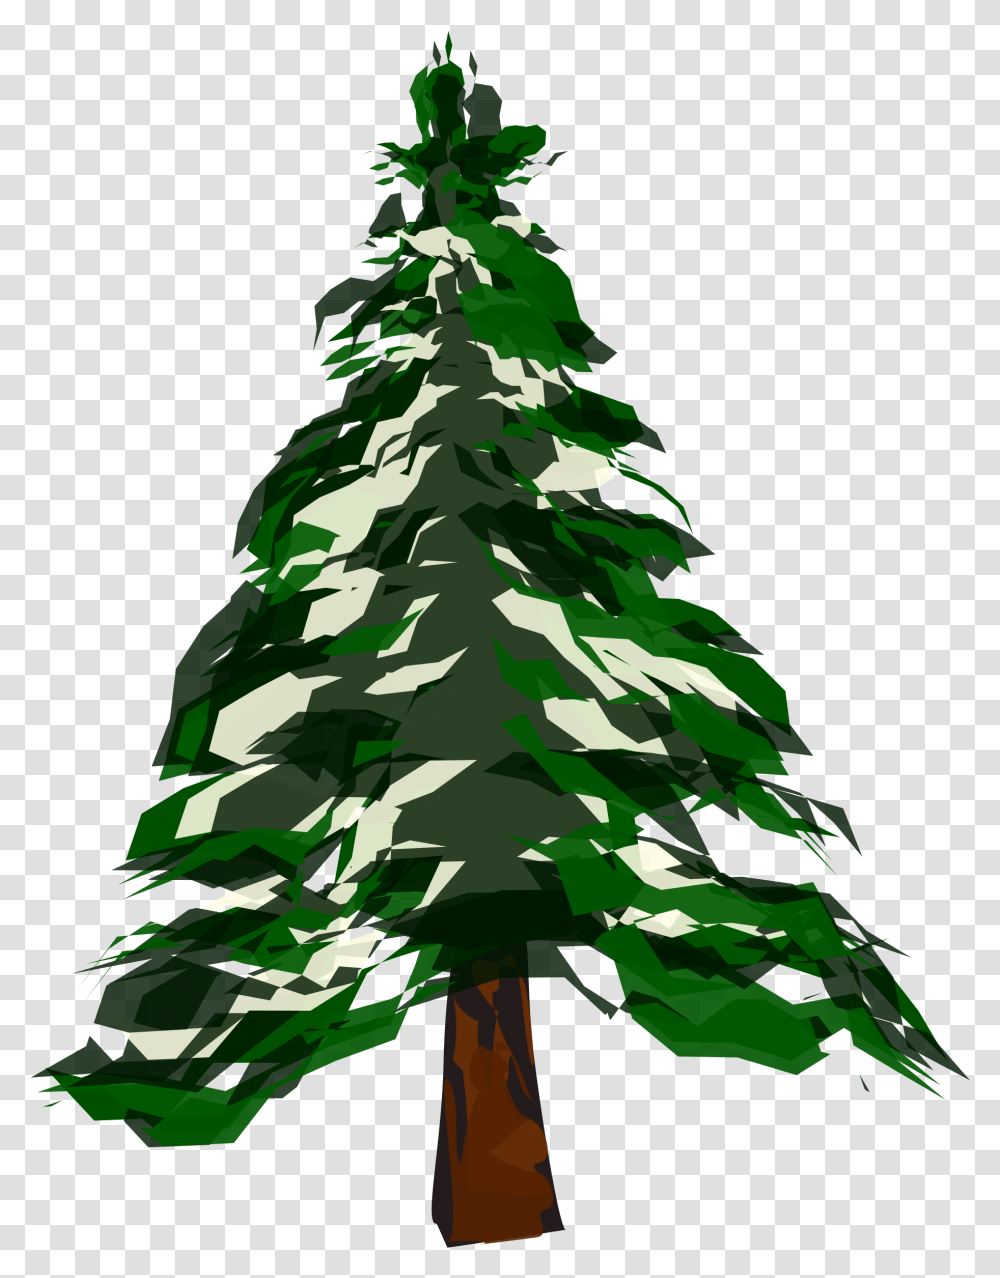 Pine Tree Snow Picture Deciduous Vs Coniferous Trees, Plant, Ornament, Christmas Tree, Fir Transparent Png